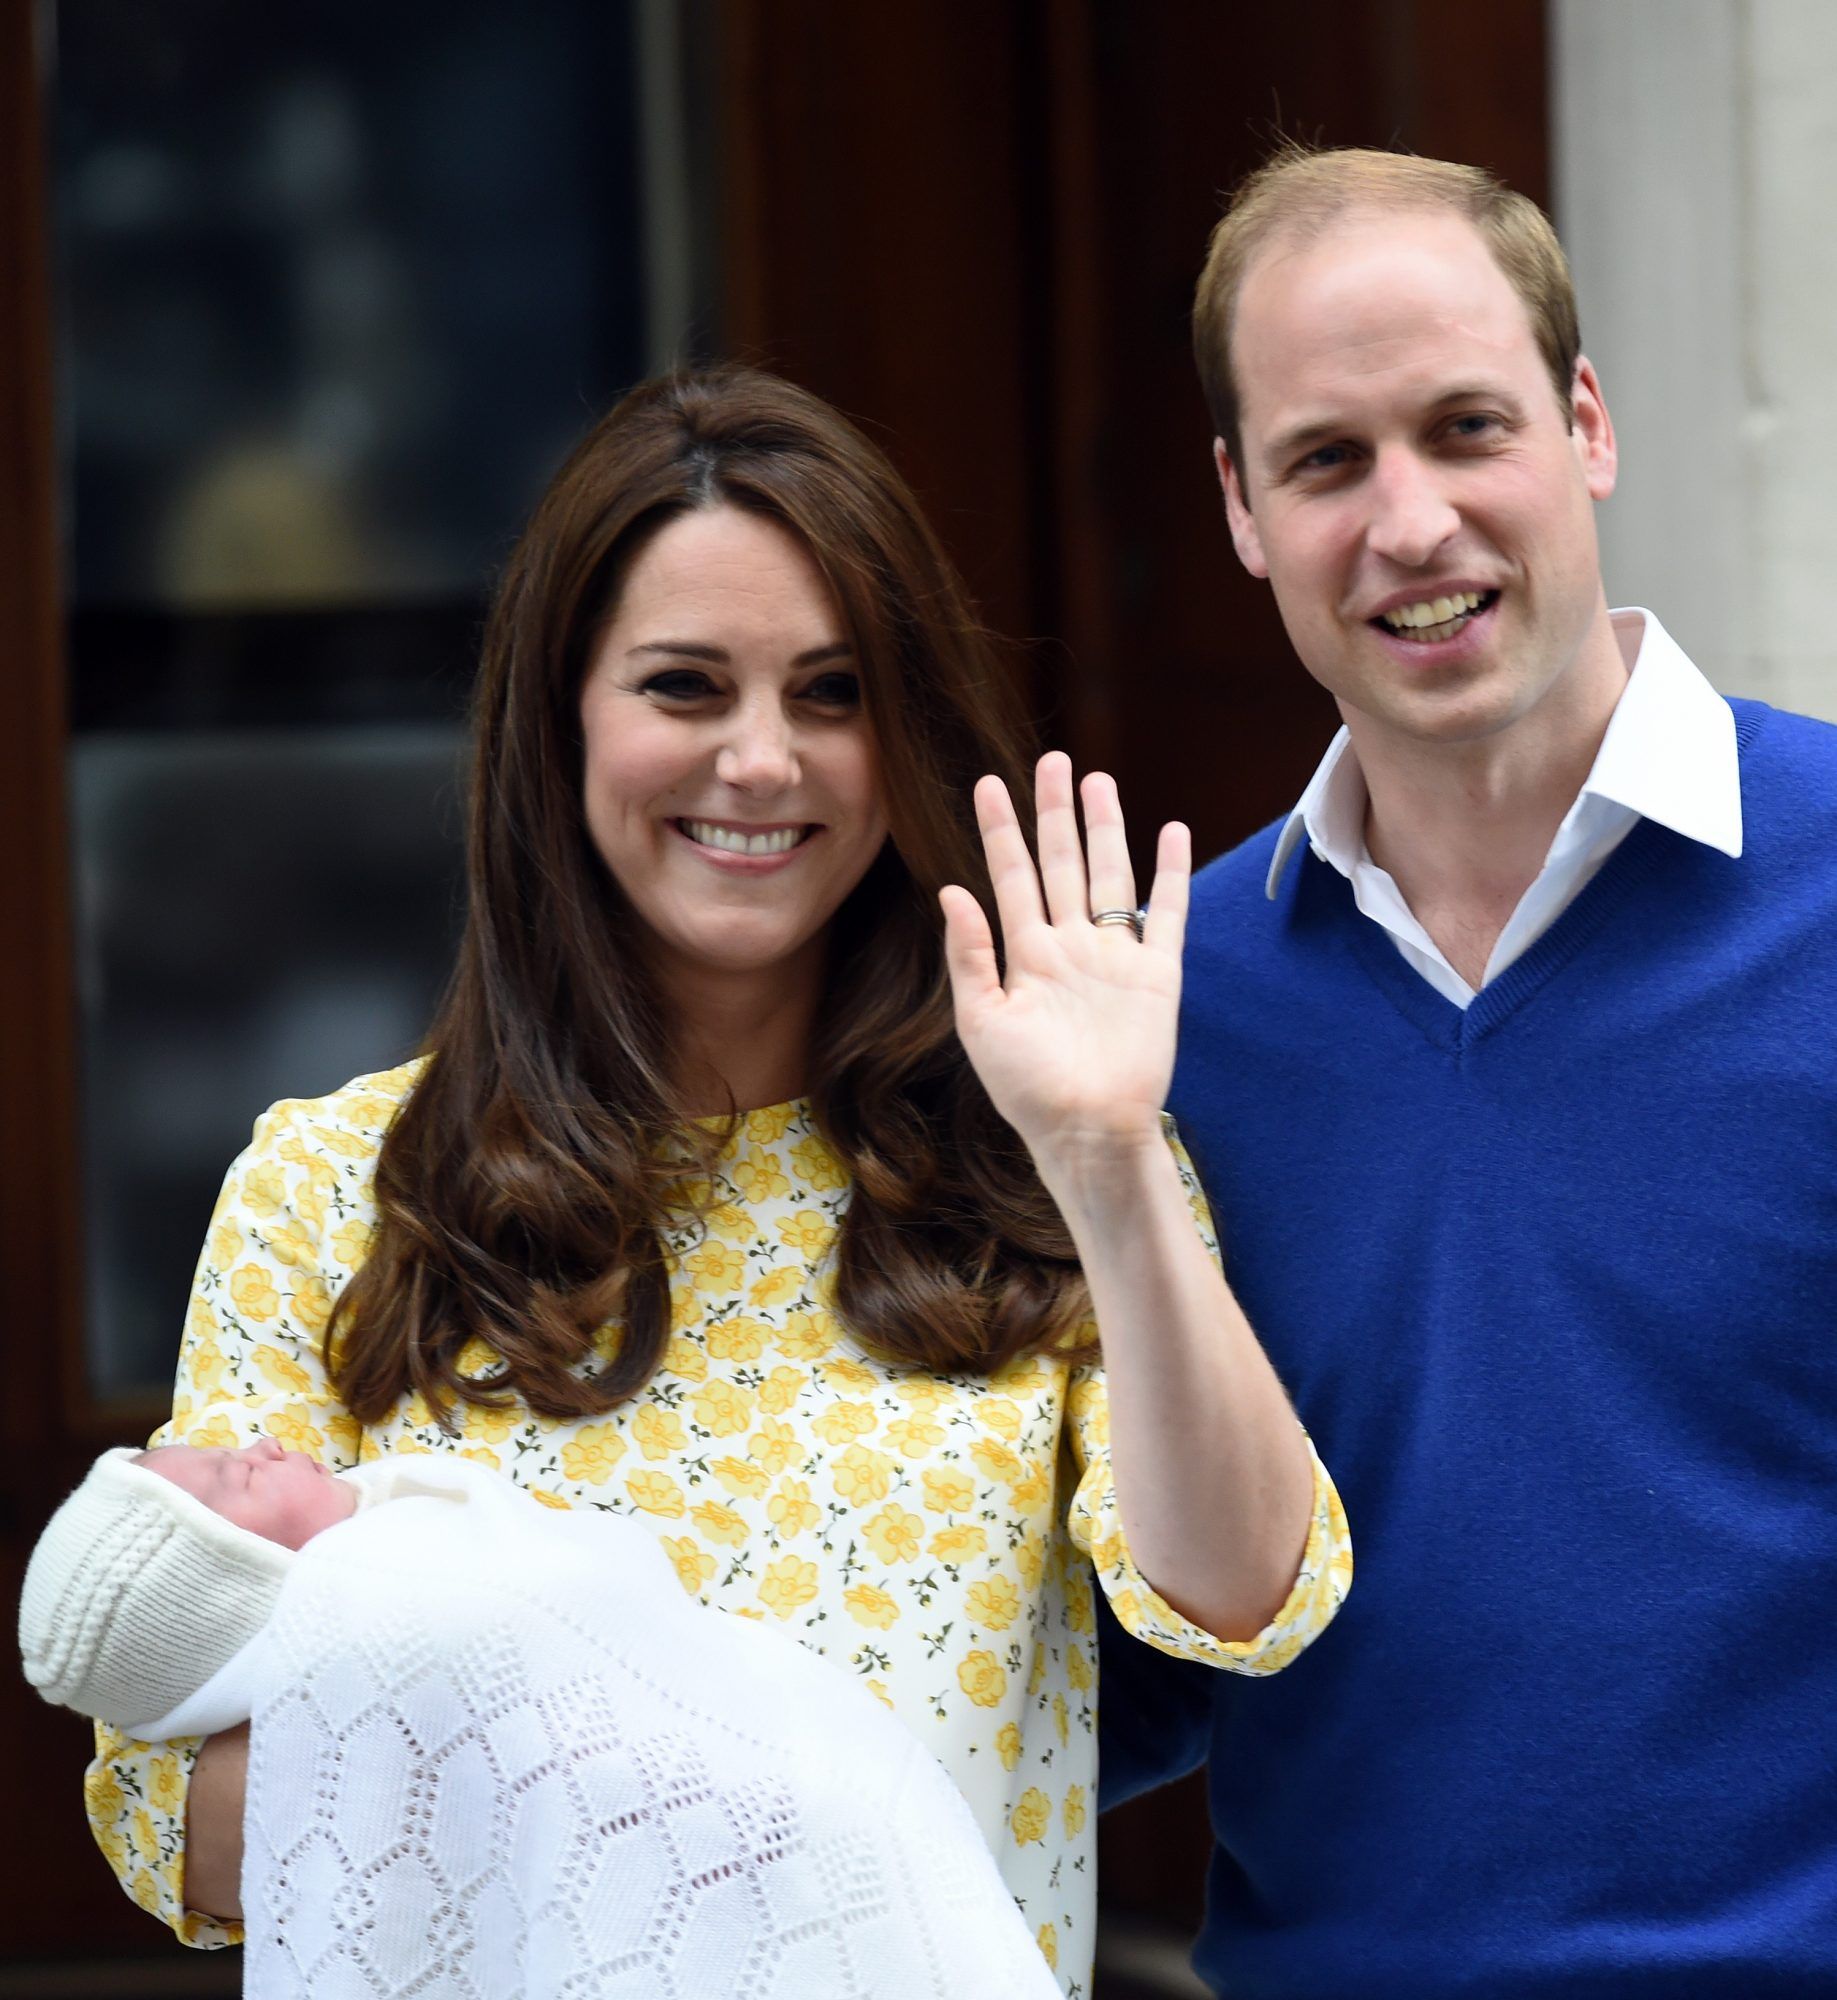 לתינוק המלכותי החדש ביותר יש שם (שלושה, למעשה)